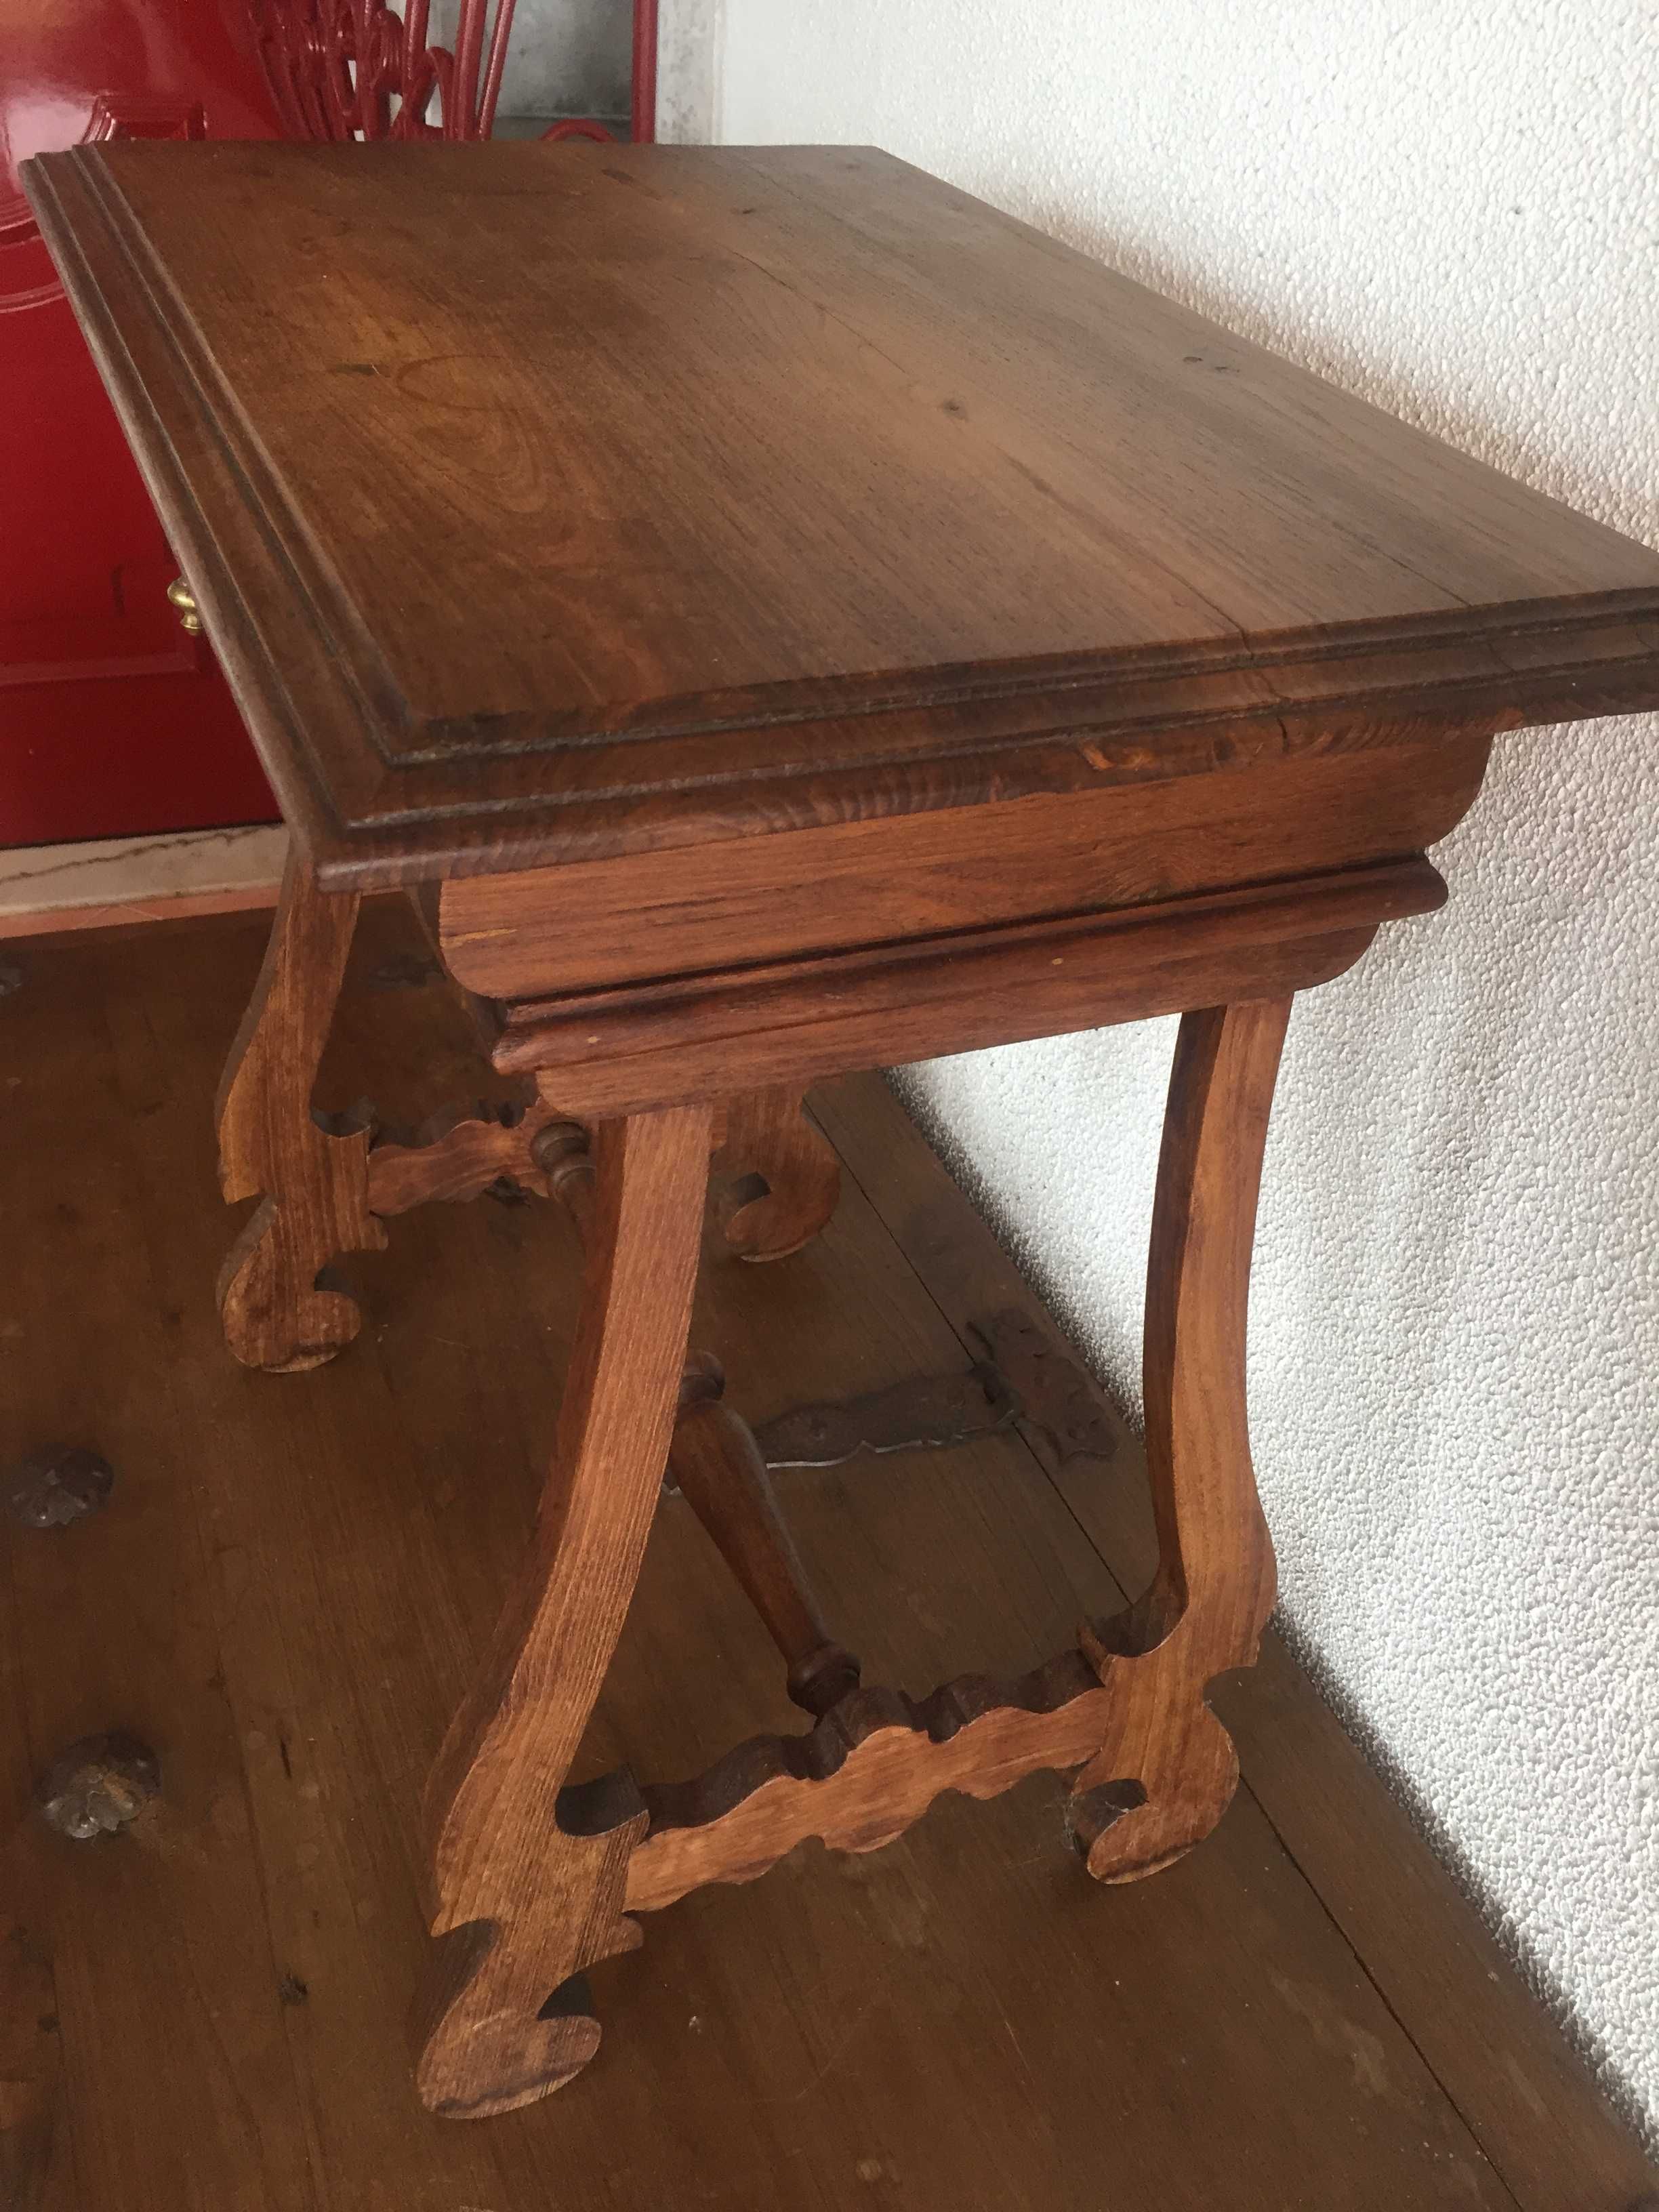 mesa madeira castanho antiga